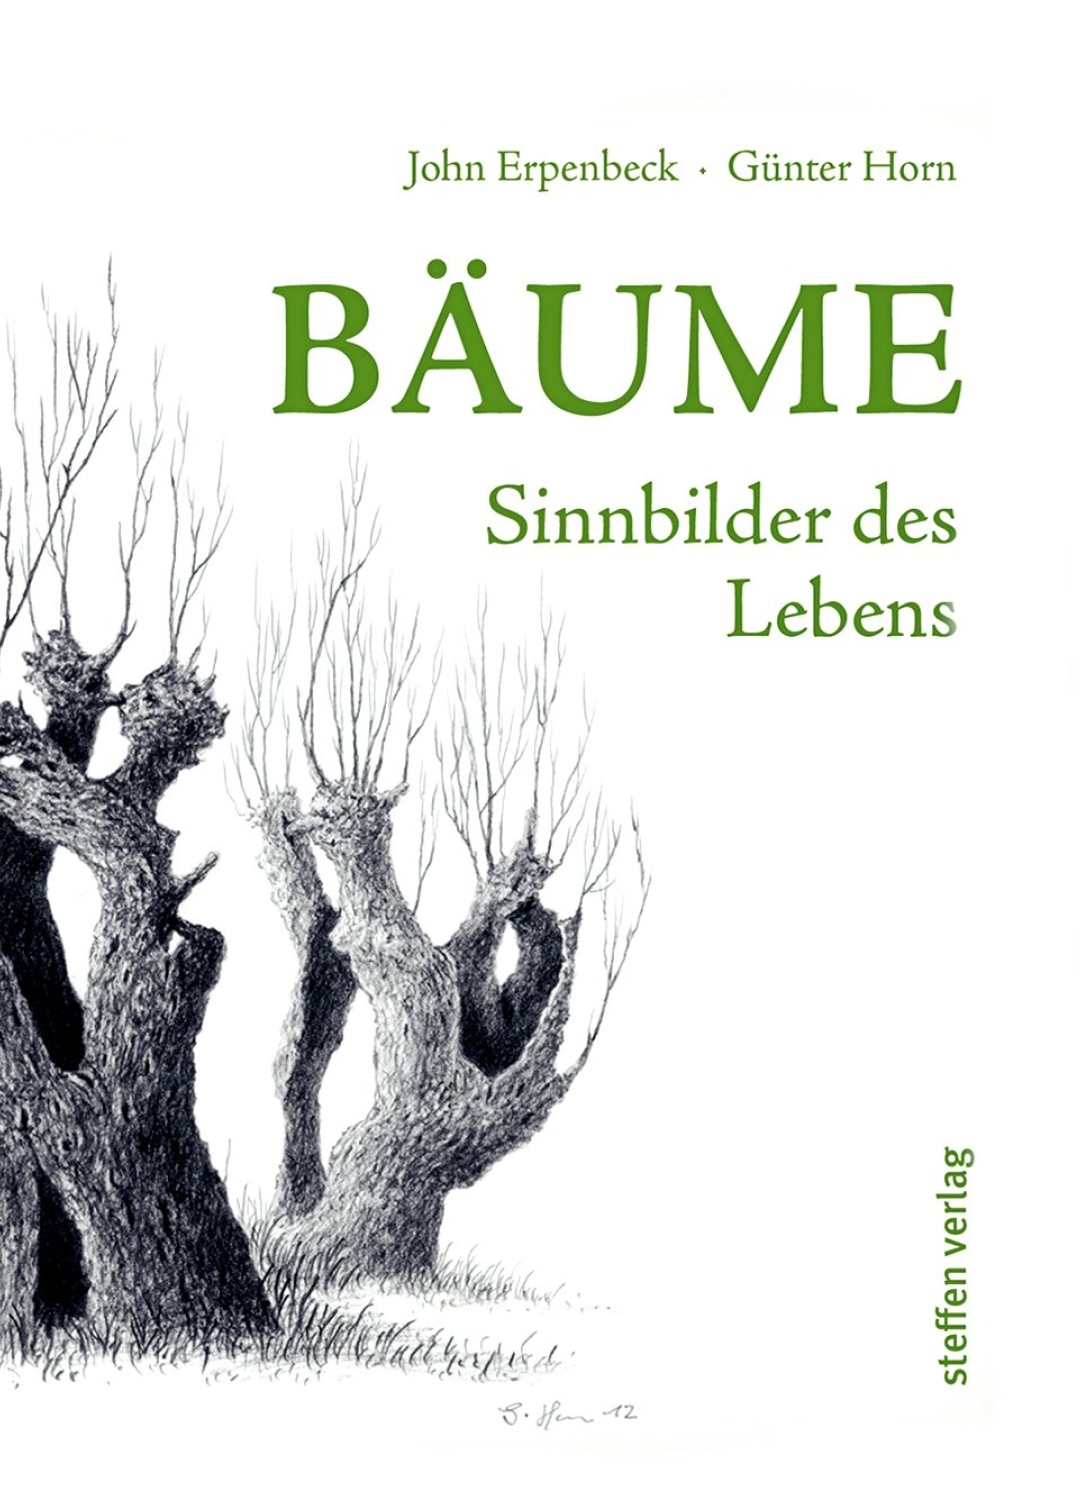 Abbildung von Bäume - Sinnbild des Lebens Buchcover von Erpenbeck und Horn